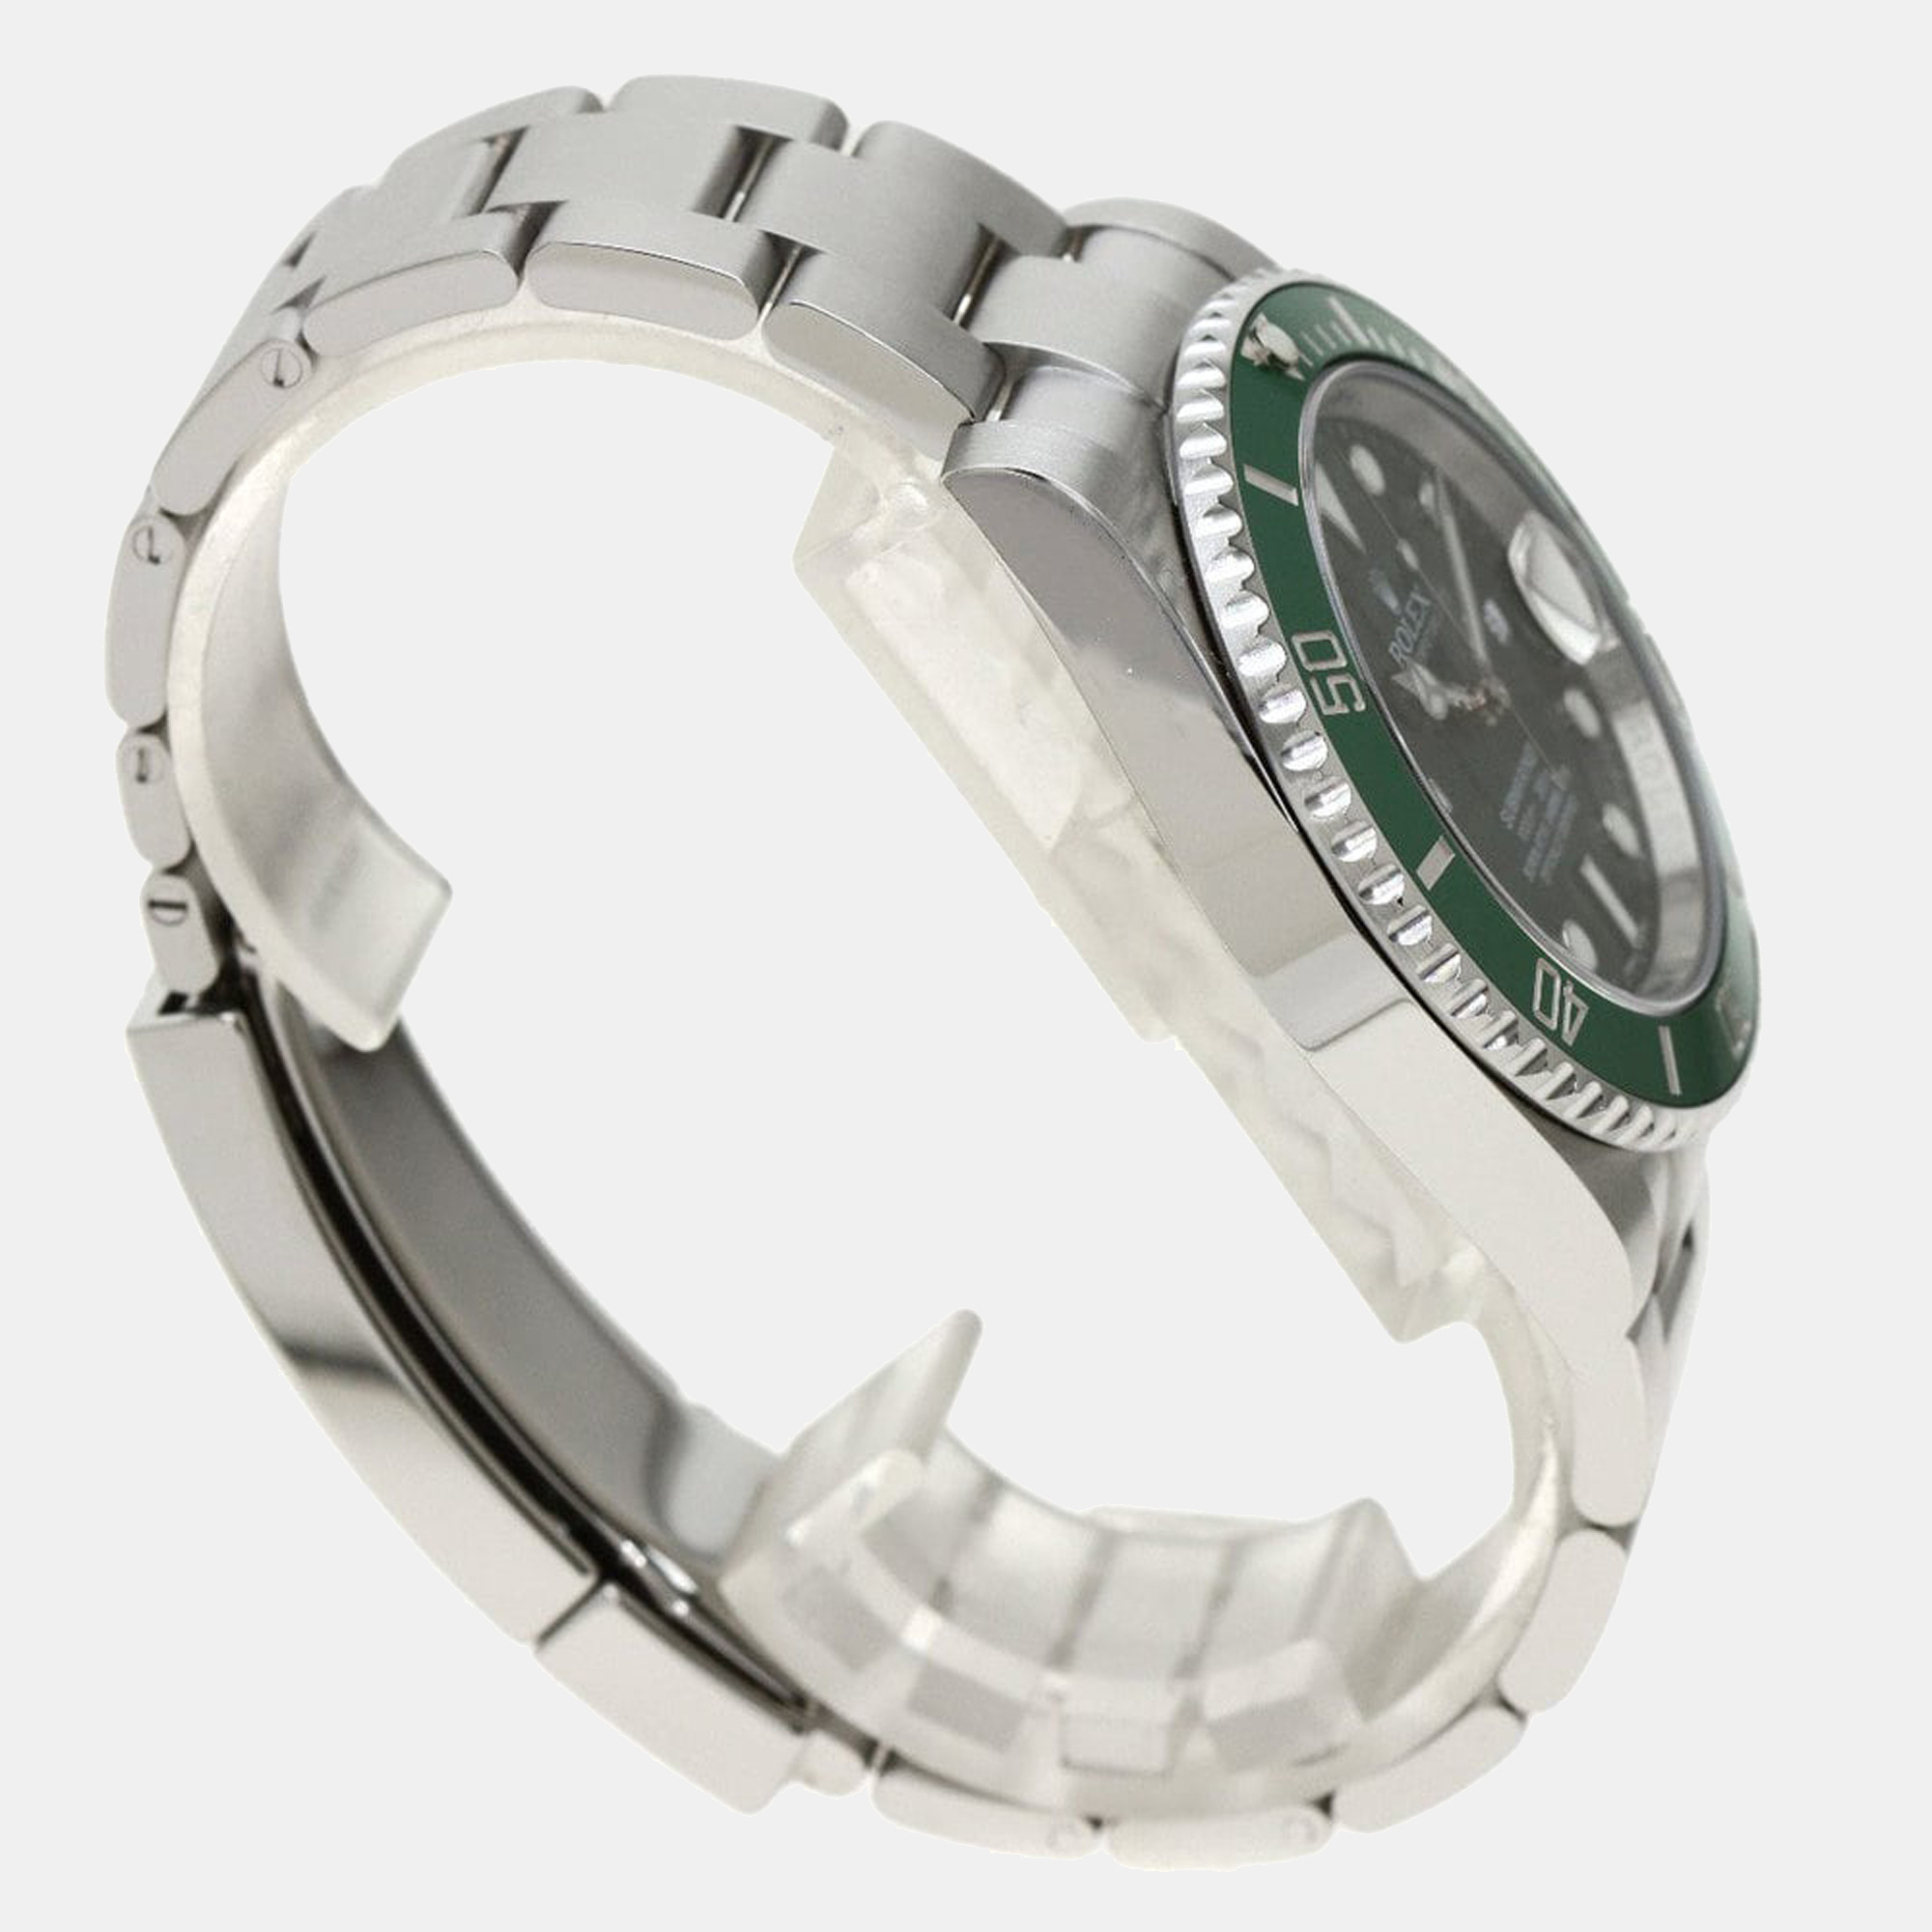 Rolex Black Stainless Steel Submariner 116610LV Men's Wristwatch 40 Mm